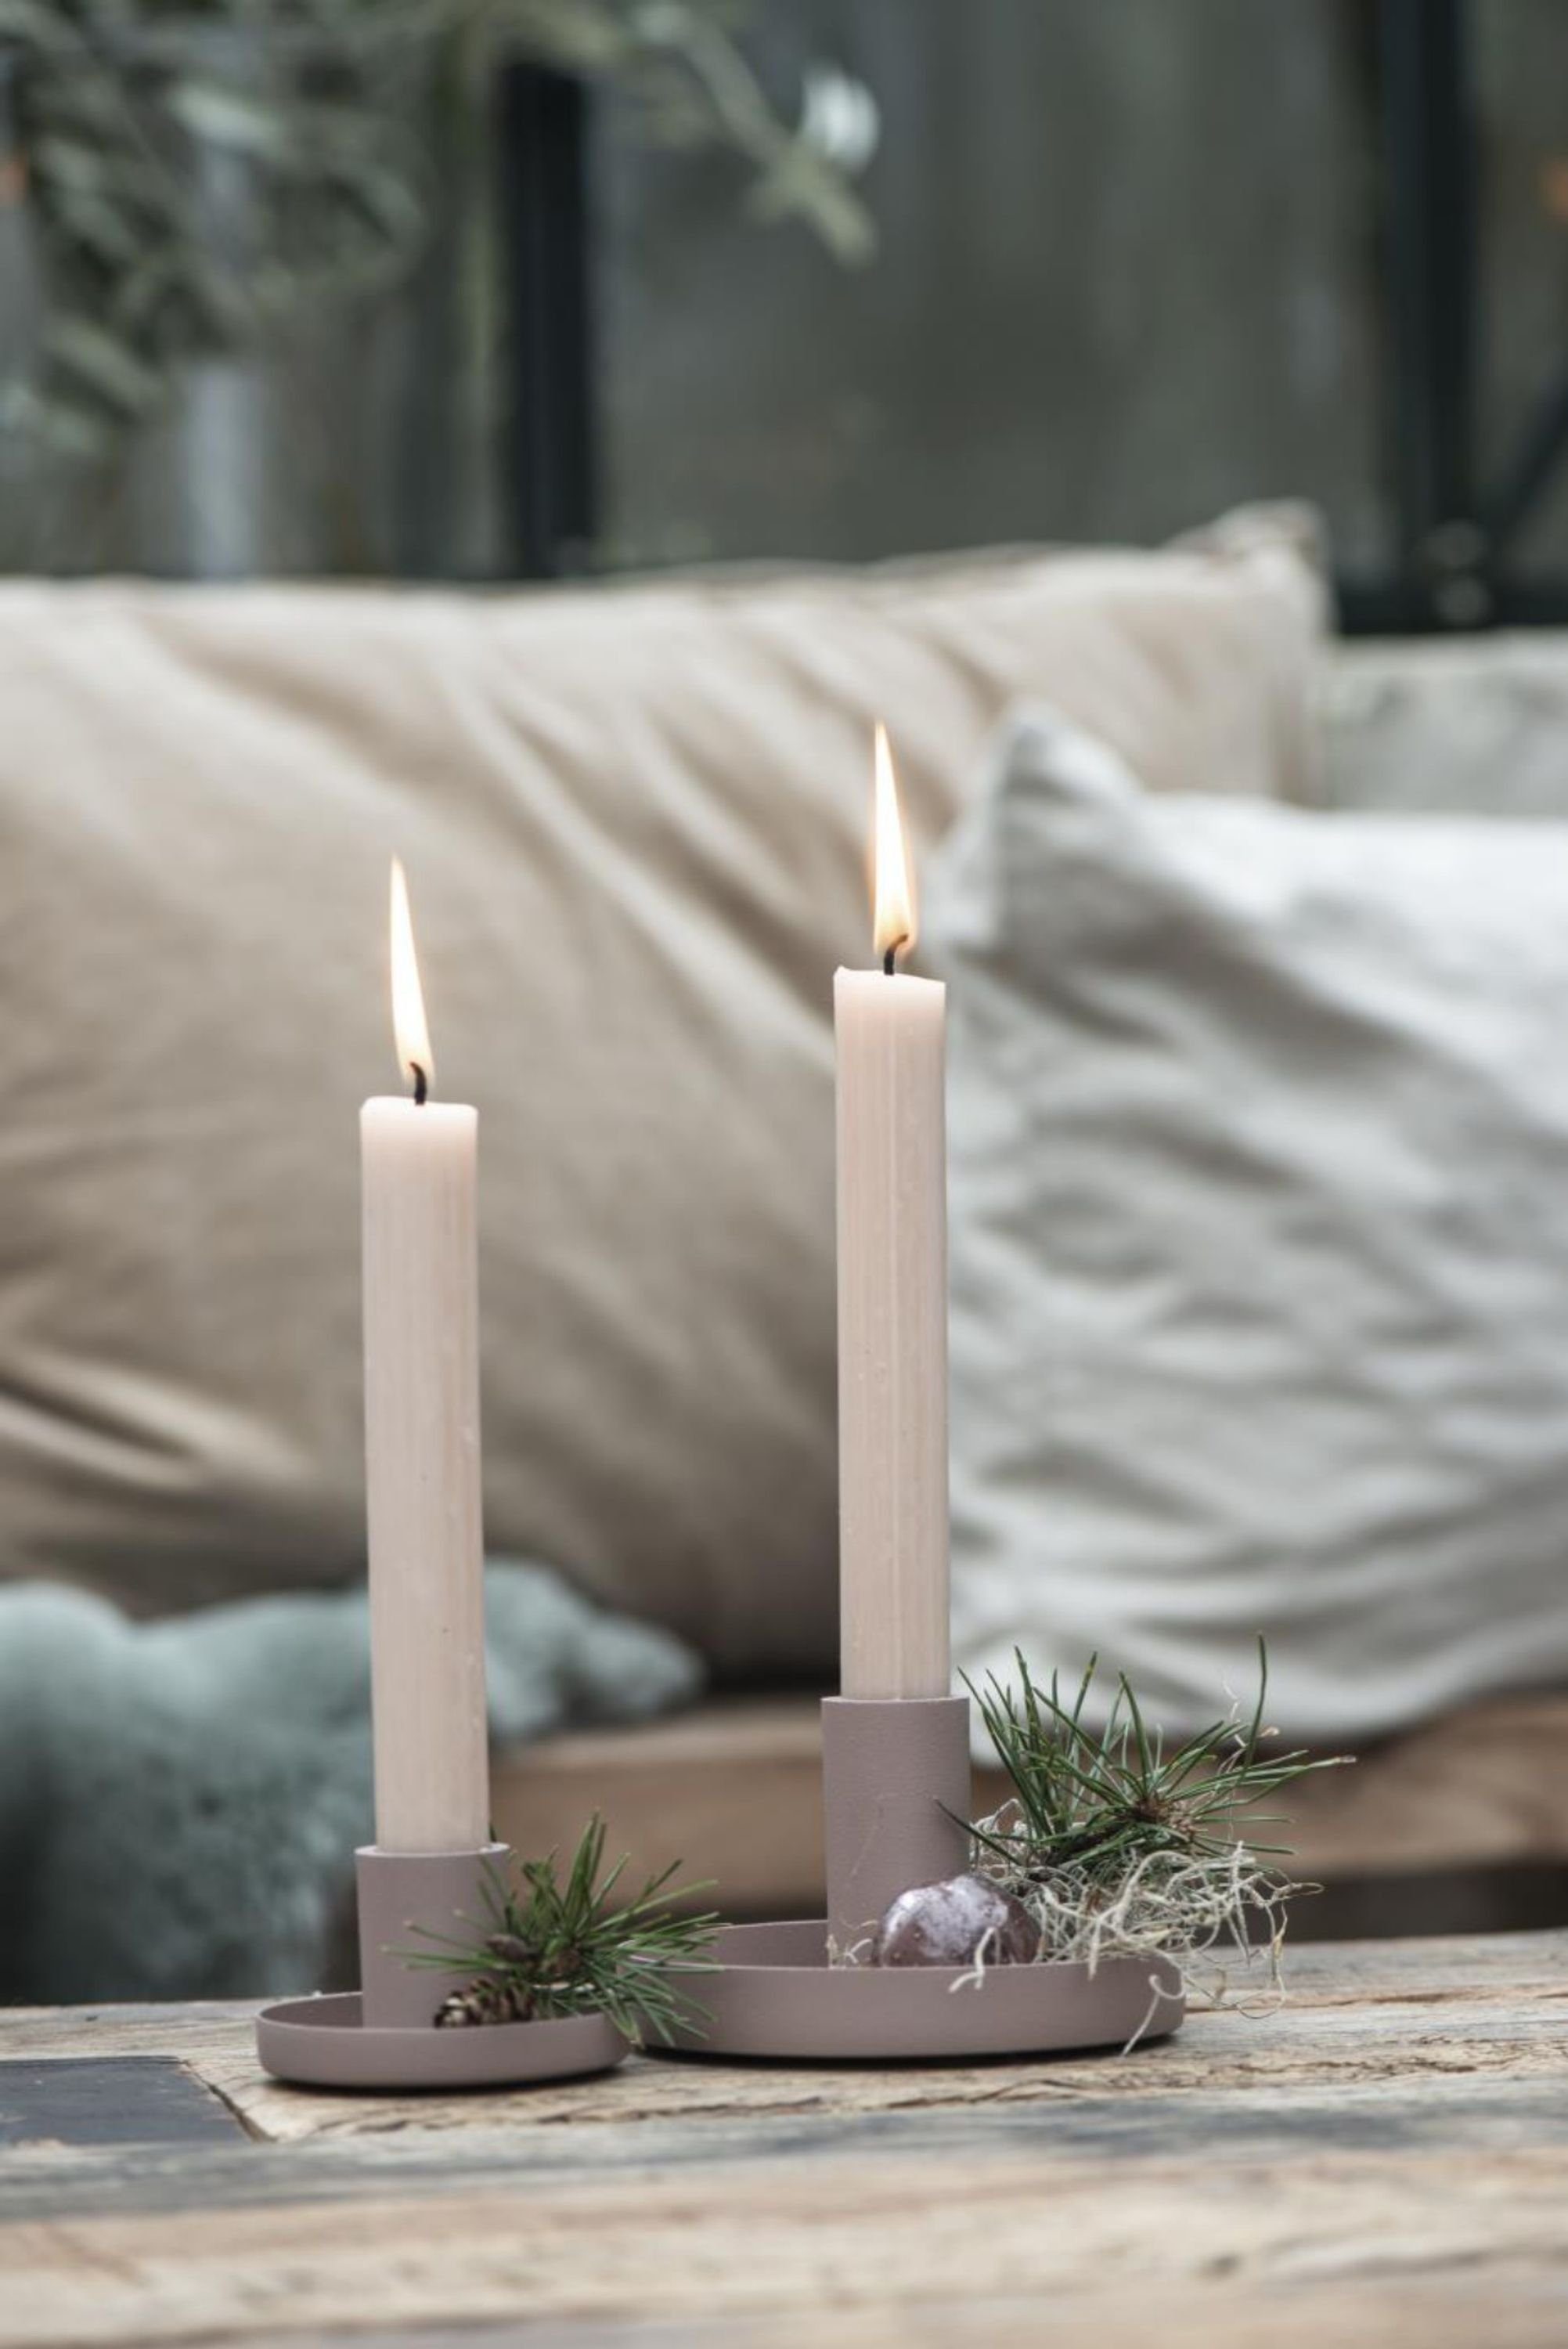 Kerzenständer, Stil Kandelaber, skandic Malva Ib schwarz Laursen Stück 2 moderne matt